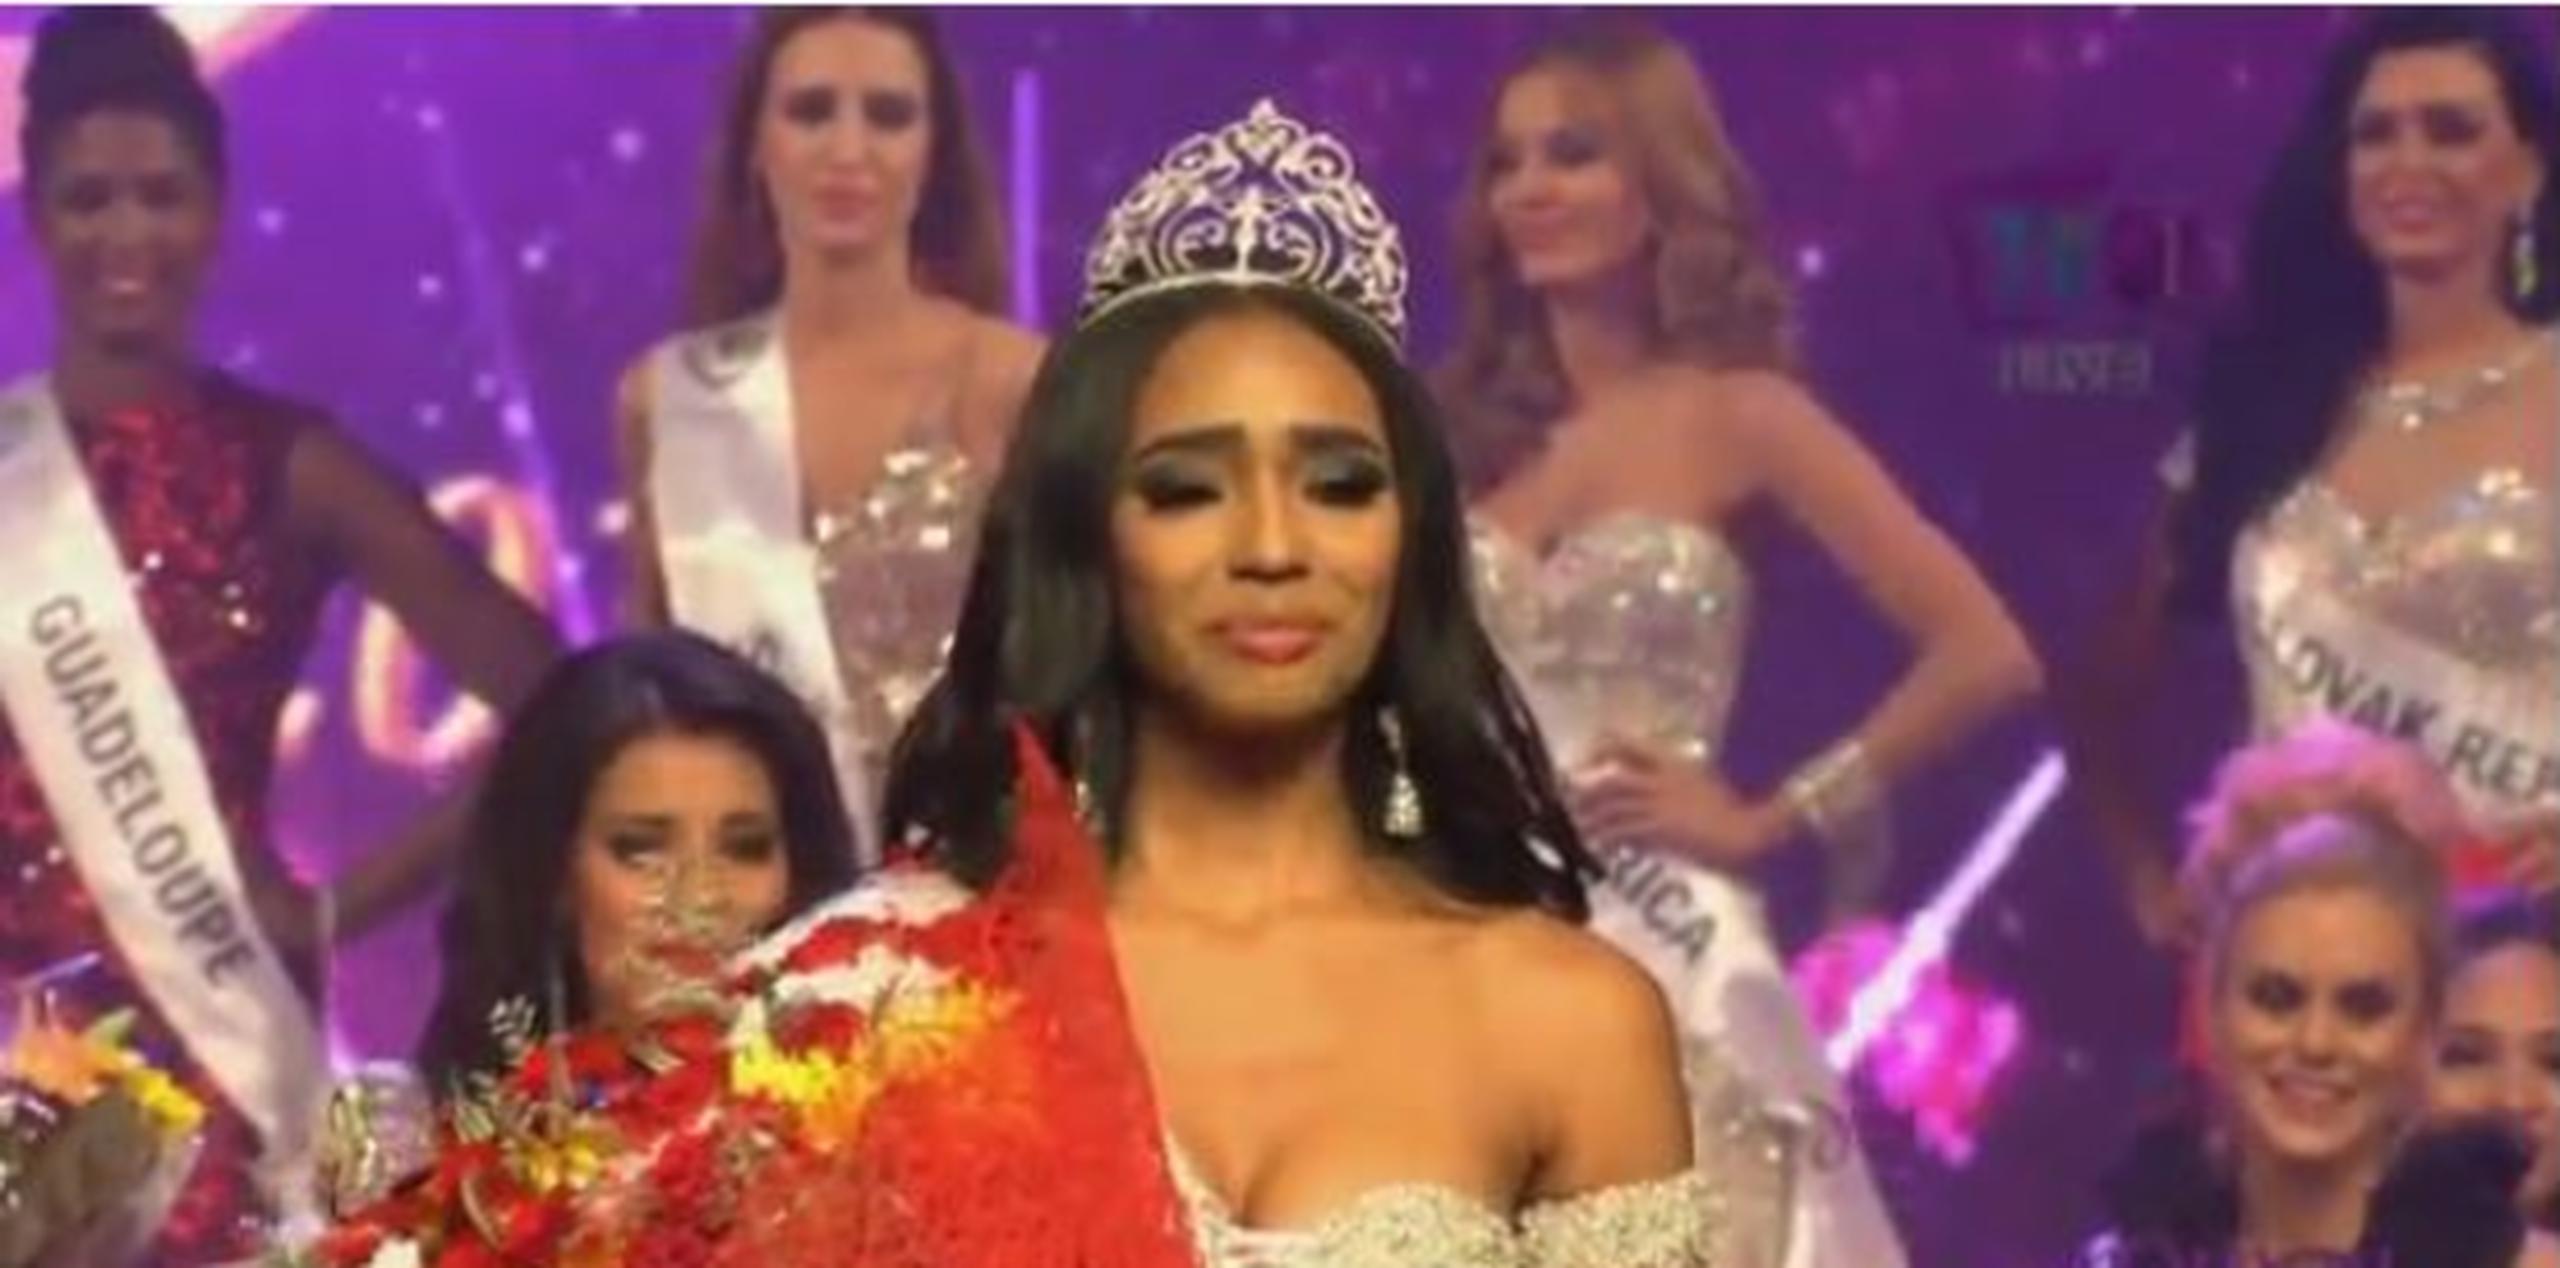 La puertorriqueña tambuién cargó con el premio de Miss Fotogénica. (Captura)